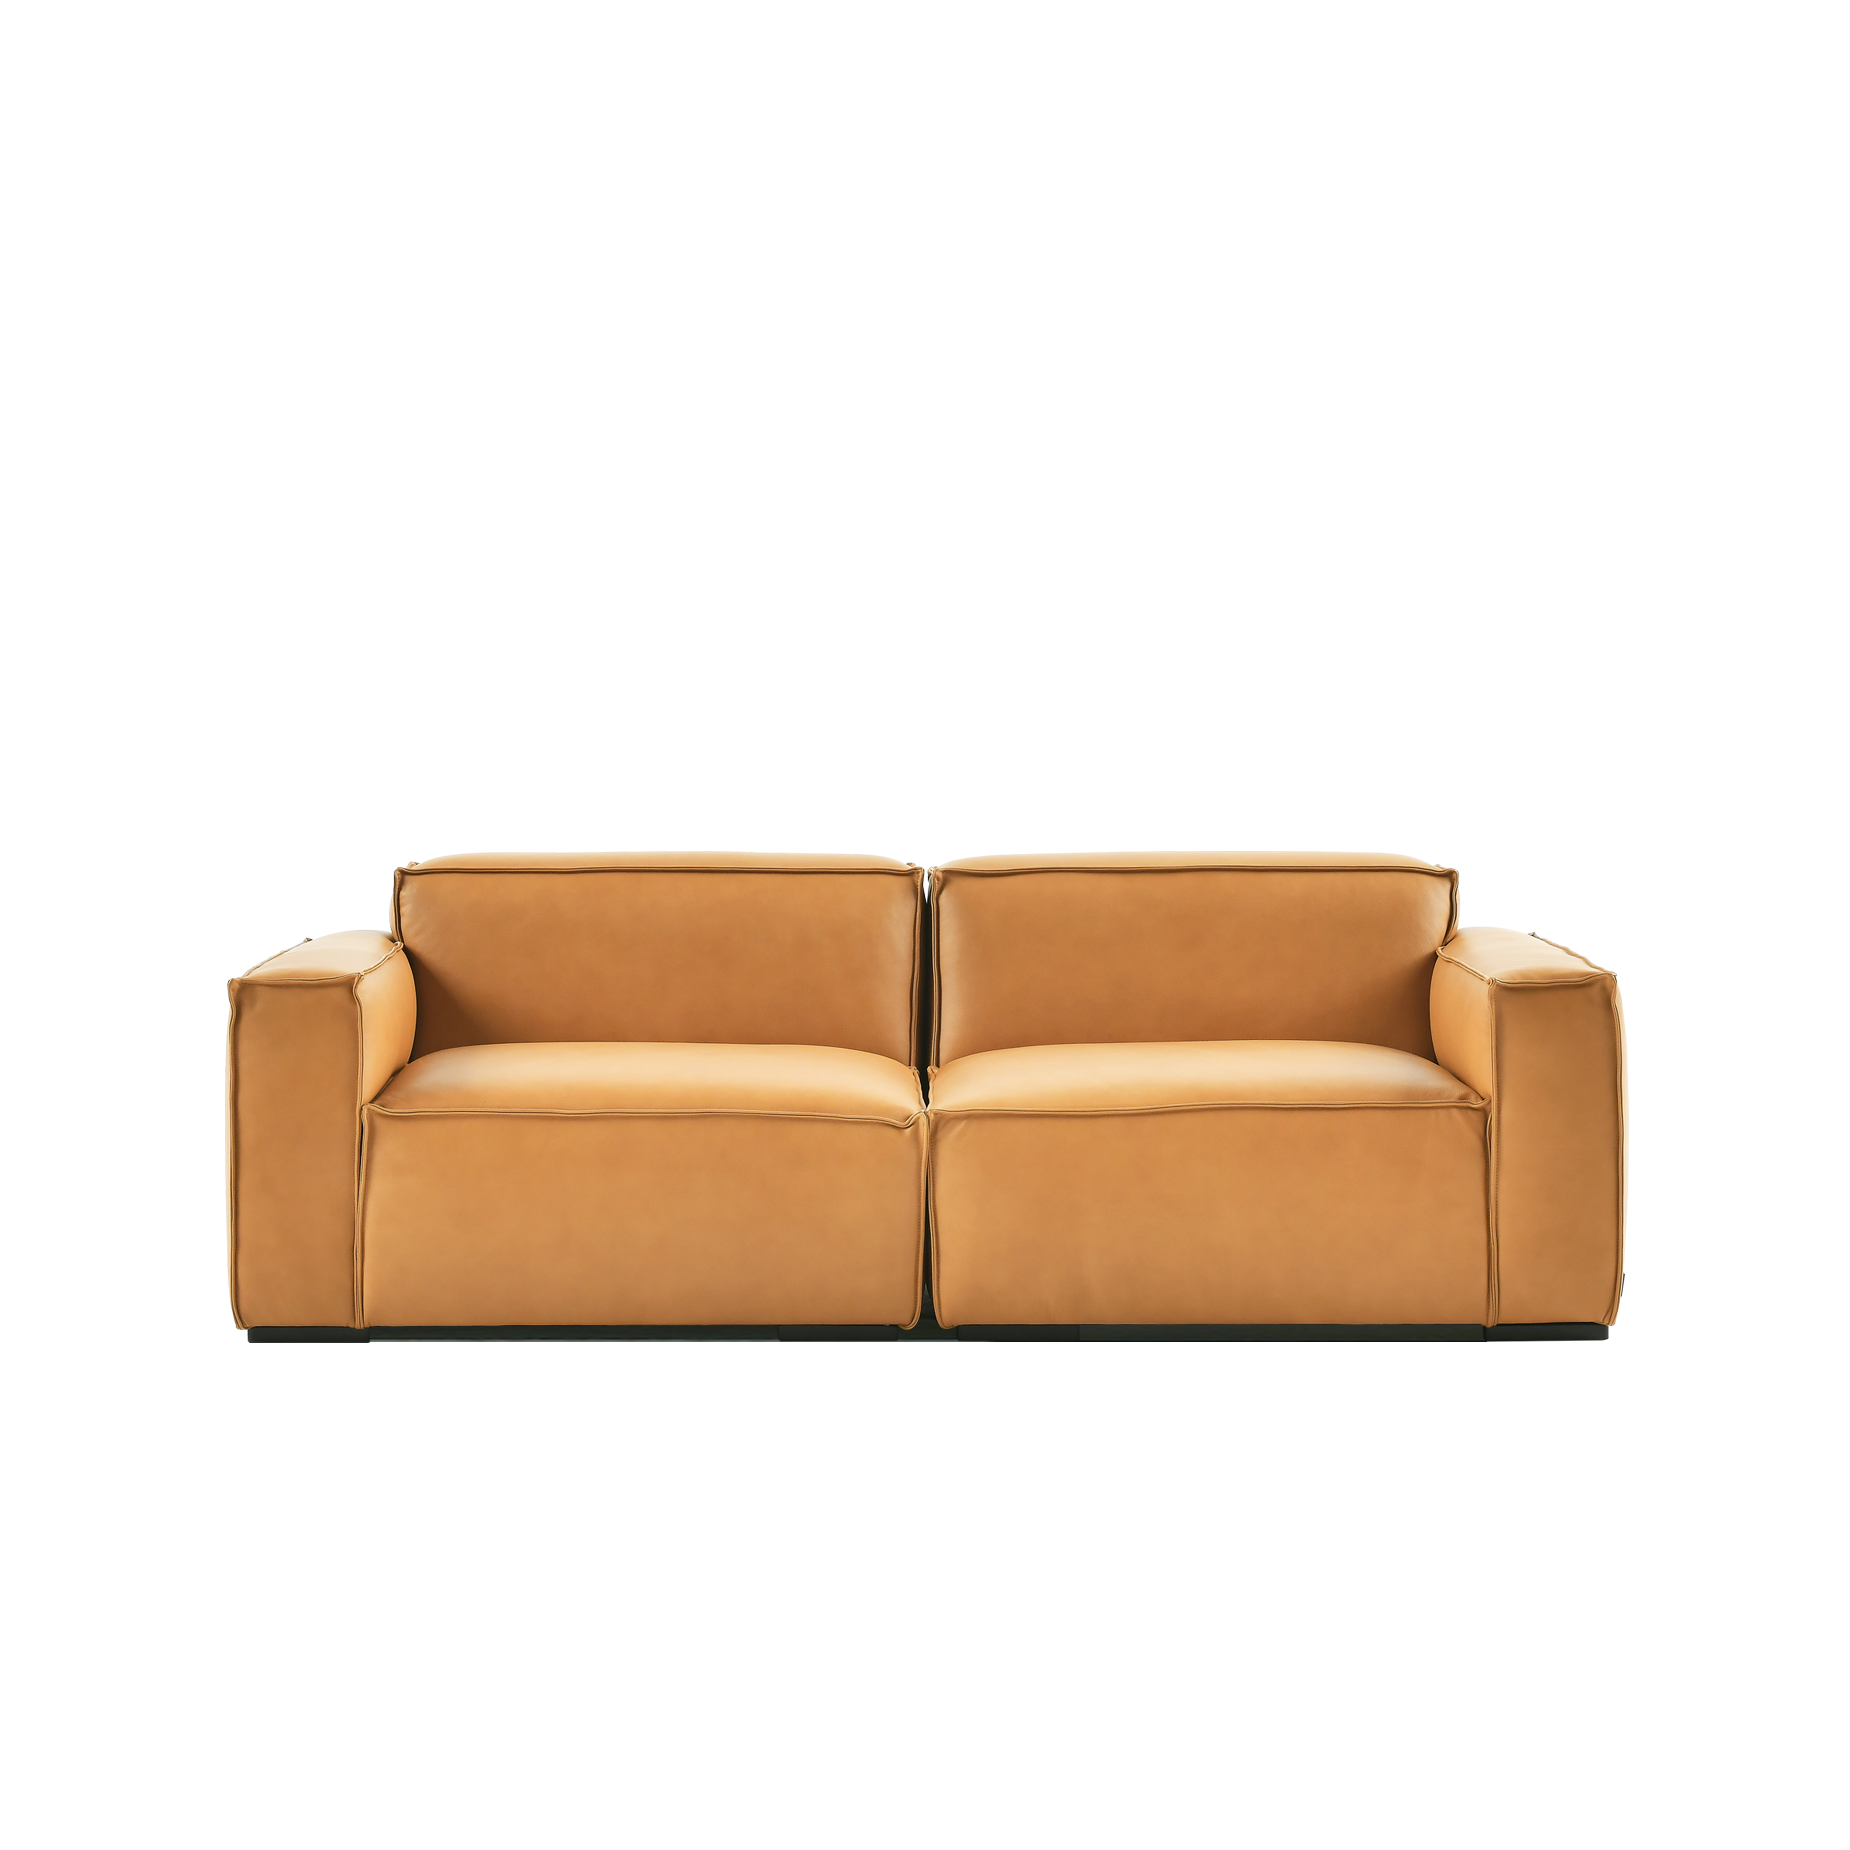 (주)도이치 DOICH ®    PEN2 modular sofa 도이치 펜2 3인 모듈소파  [4주 주문제작]